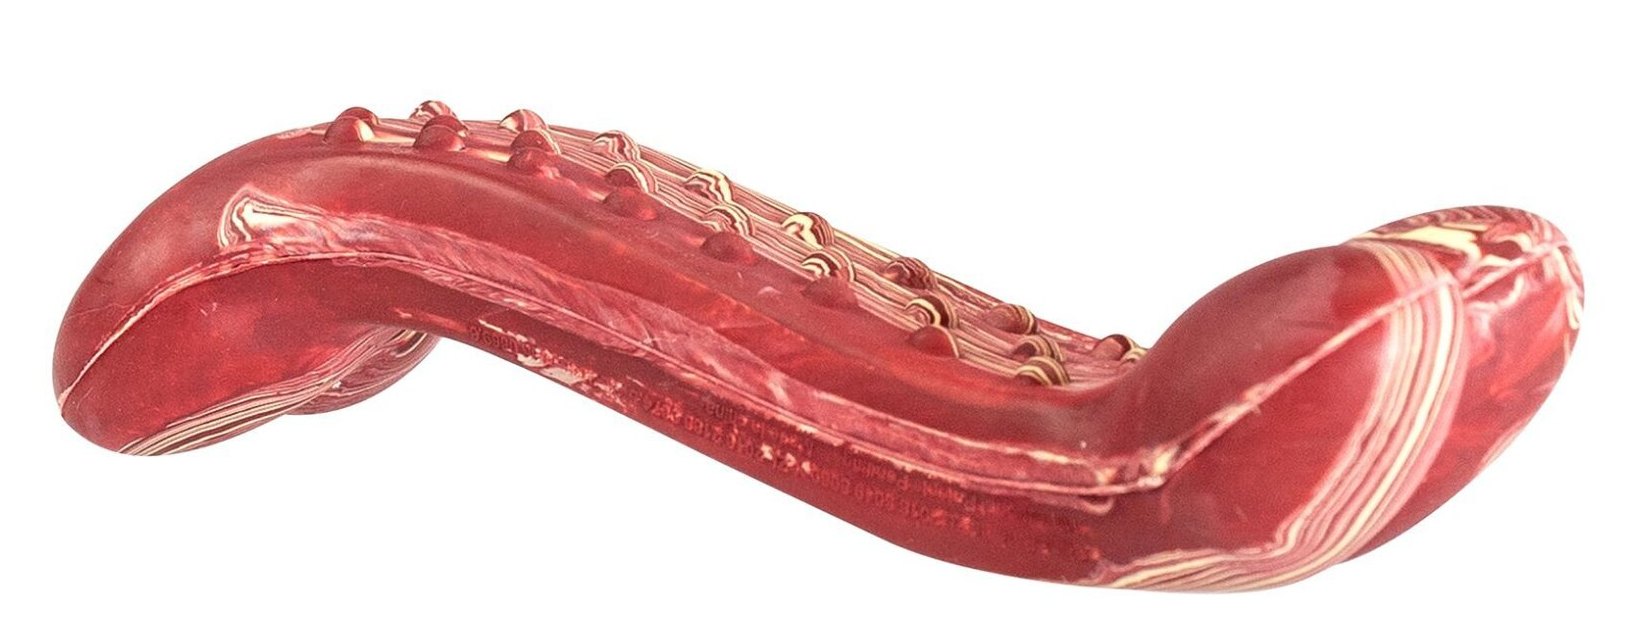 Antibakteriální dentální kost s vůní slaniny